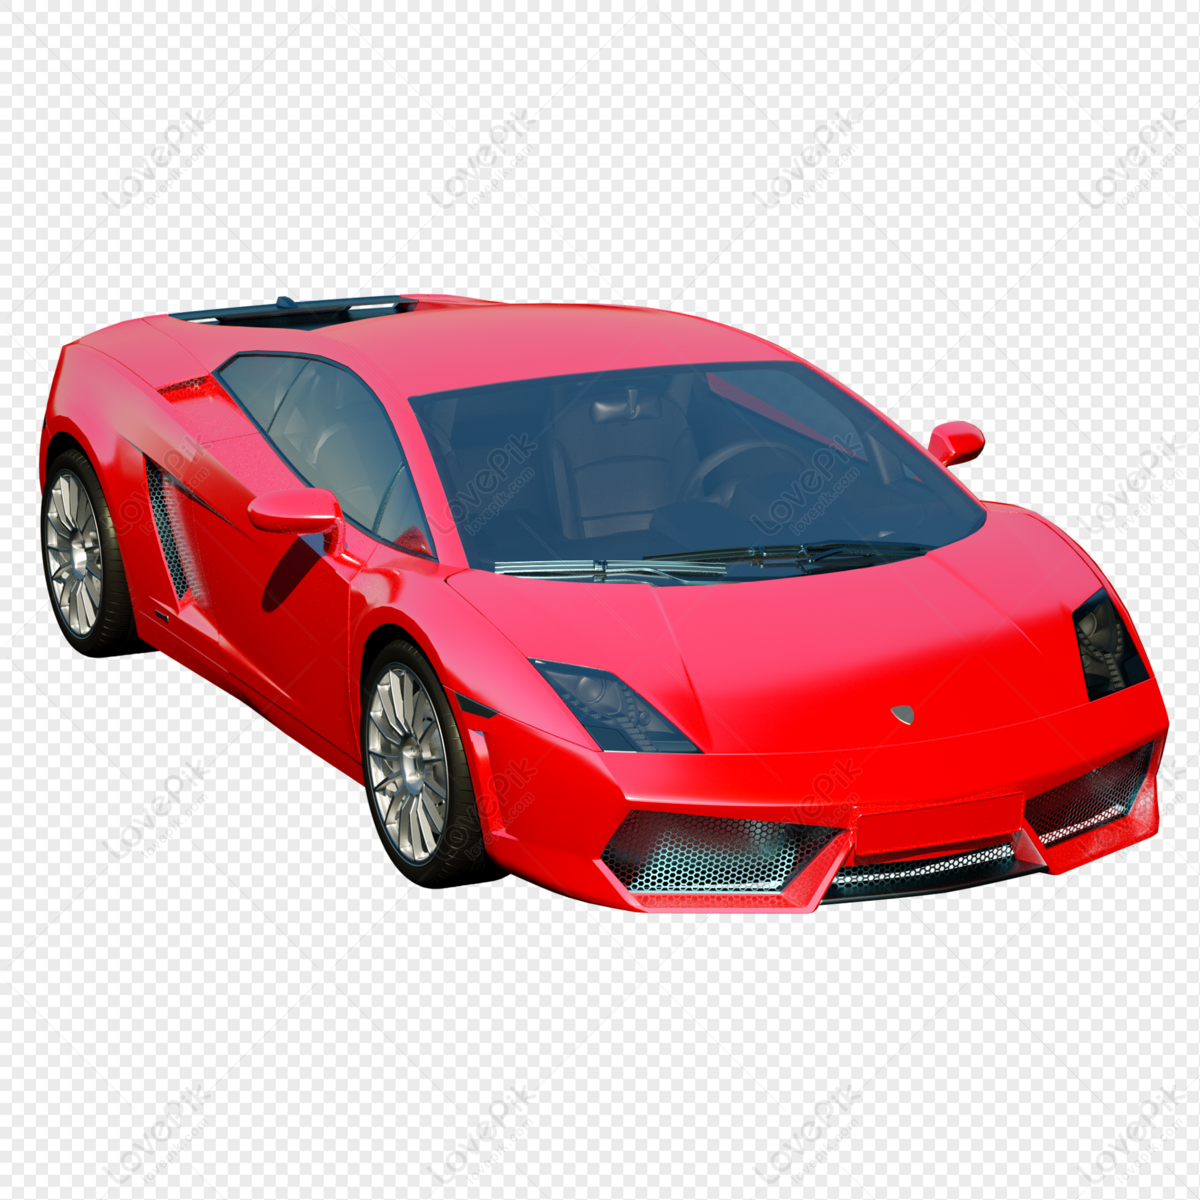 Xe ô tô 3D: Bạn muốn cảm nhận một trải nghiệm chân thực nhưng không muốn ra đường? Với xe ô tô 3D, bạn có thể chiêm ngưỡng mọi chi tiết về chiếc xe mình ưa thích với sự trung thực của công nghệ 3D. Đừng bỏ lỡ cơ hội trải nghiệm điều này với hình ảnh đầy sống động!